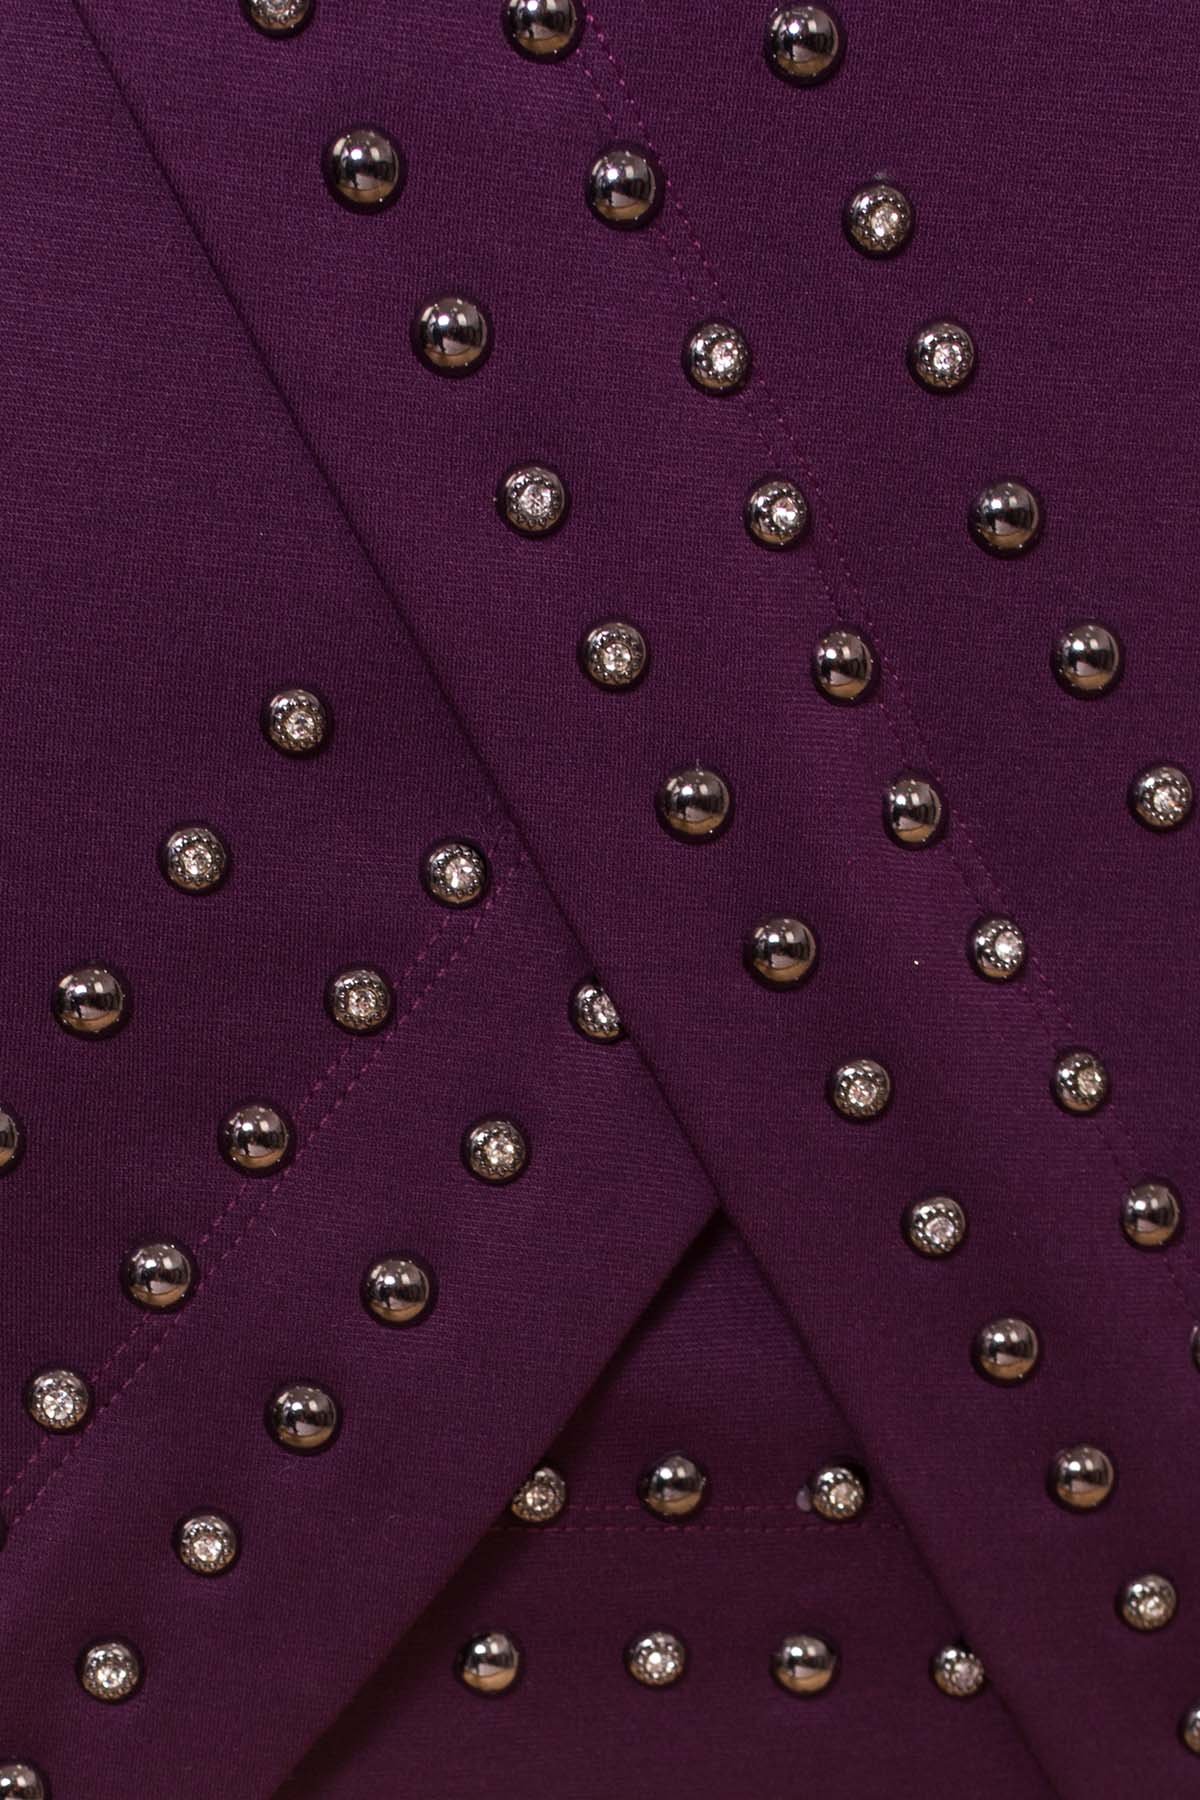 Облегающее короткое Платье Дюке 4430 АРТ. 21287 Цвет: Фиолет Темный - фото 4, интернет магазин tm-modus.ru